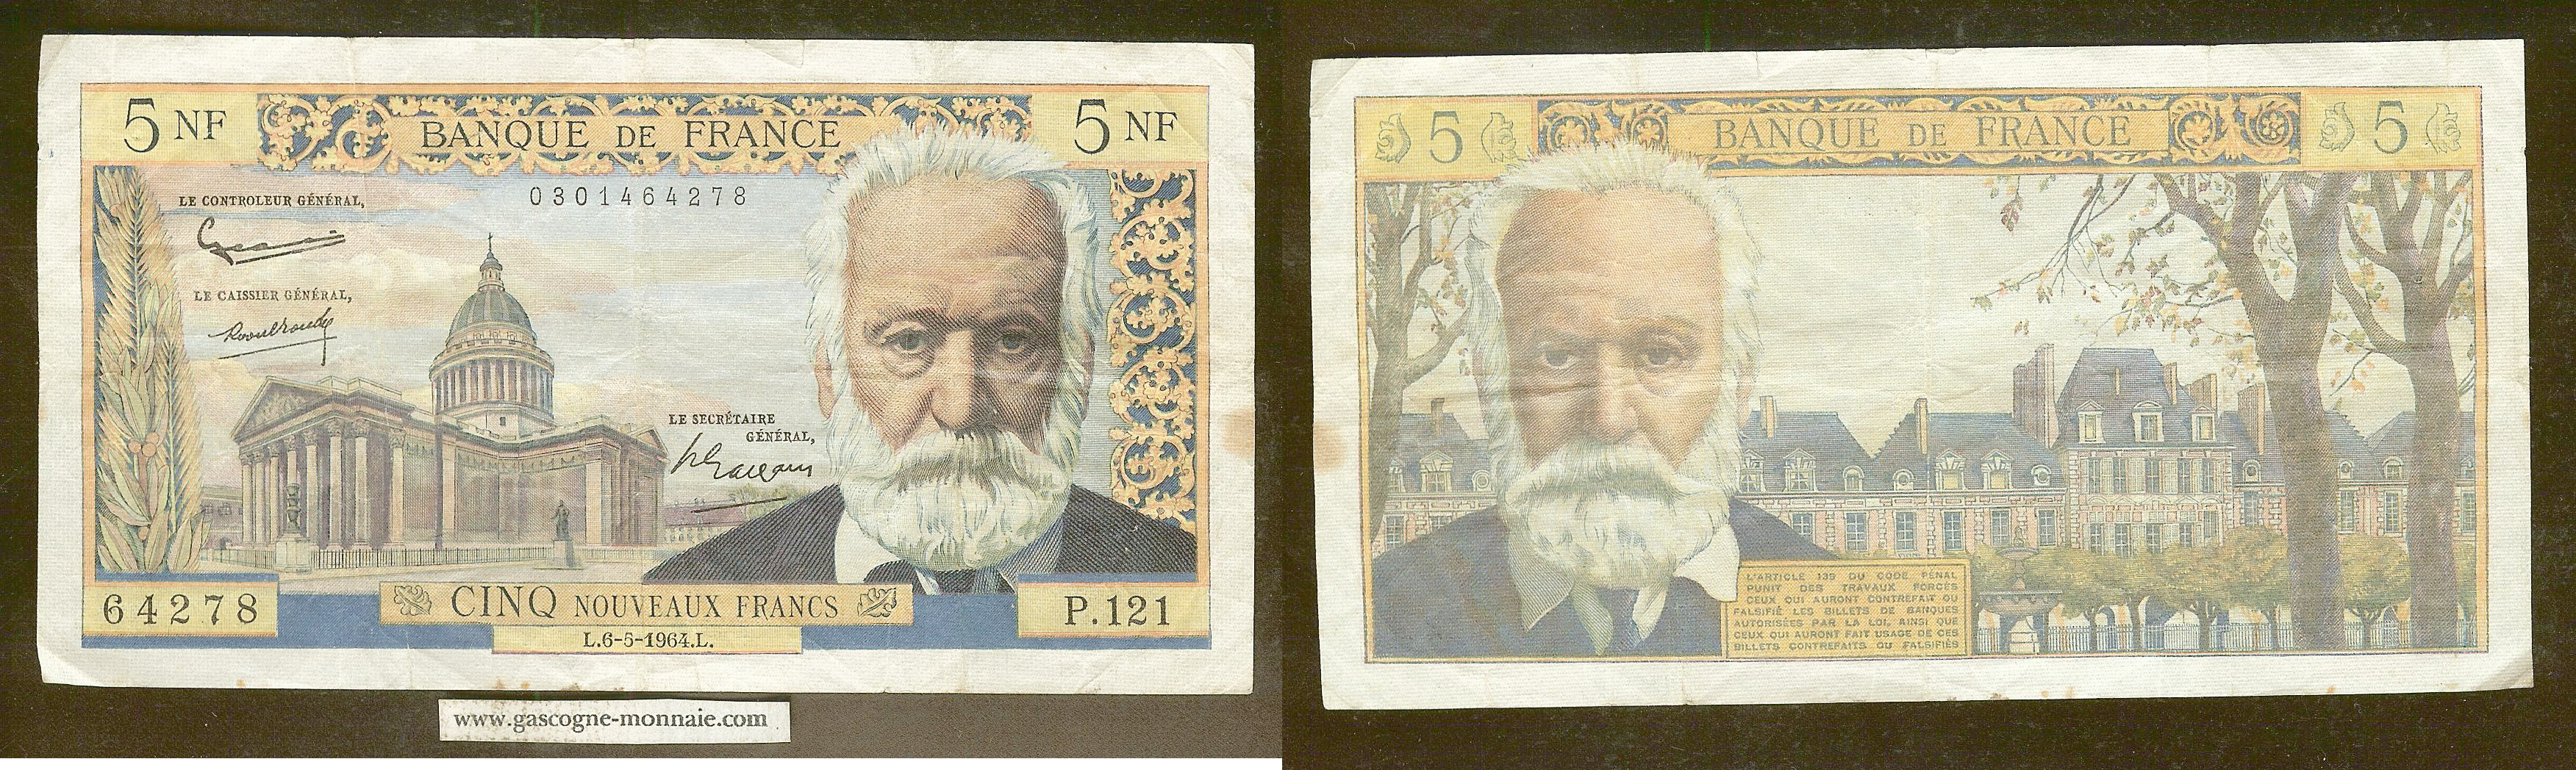 5 francs Victor Hugo 6.5.1964 gF